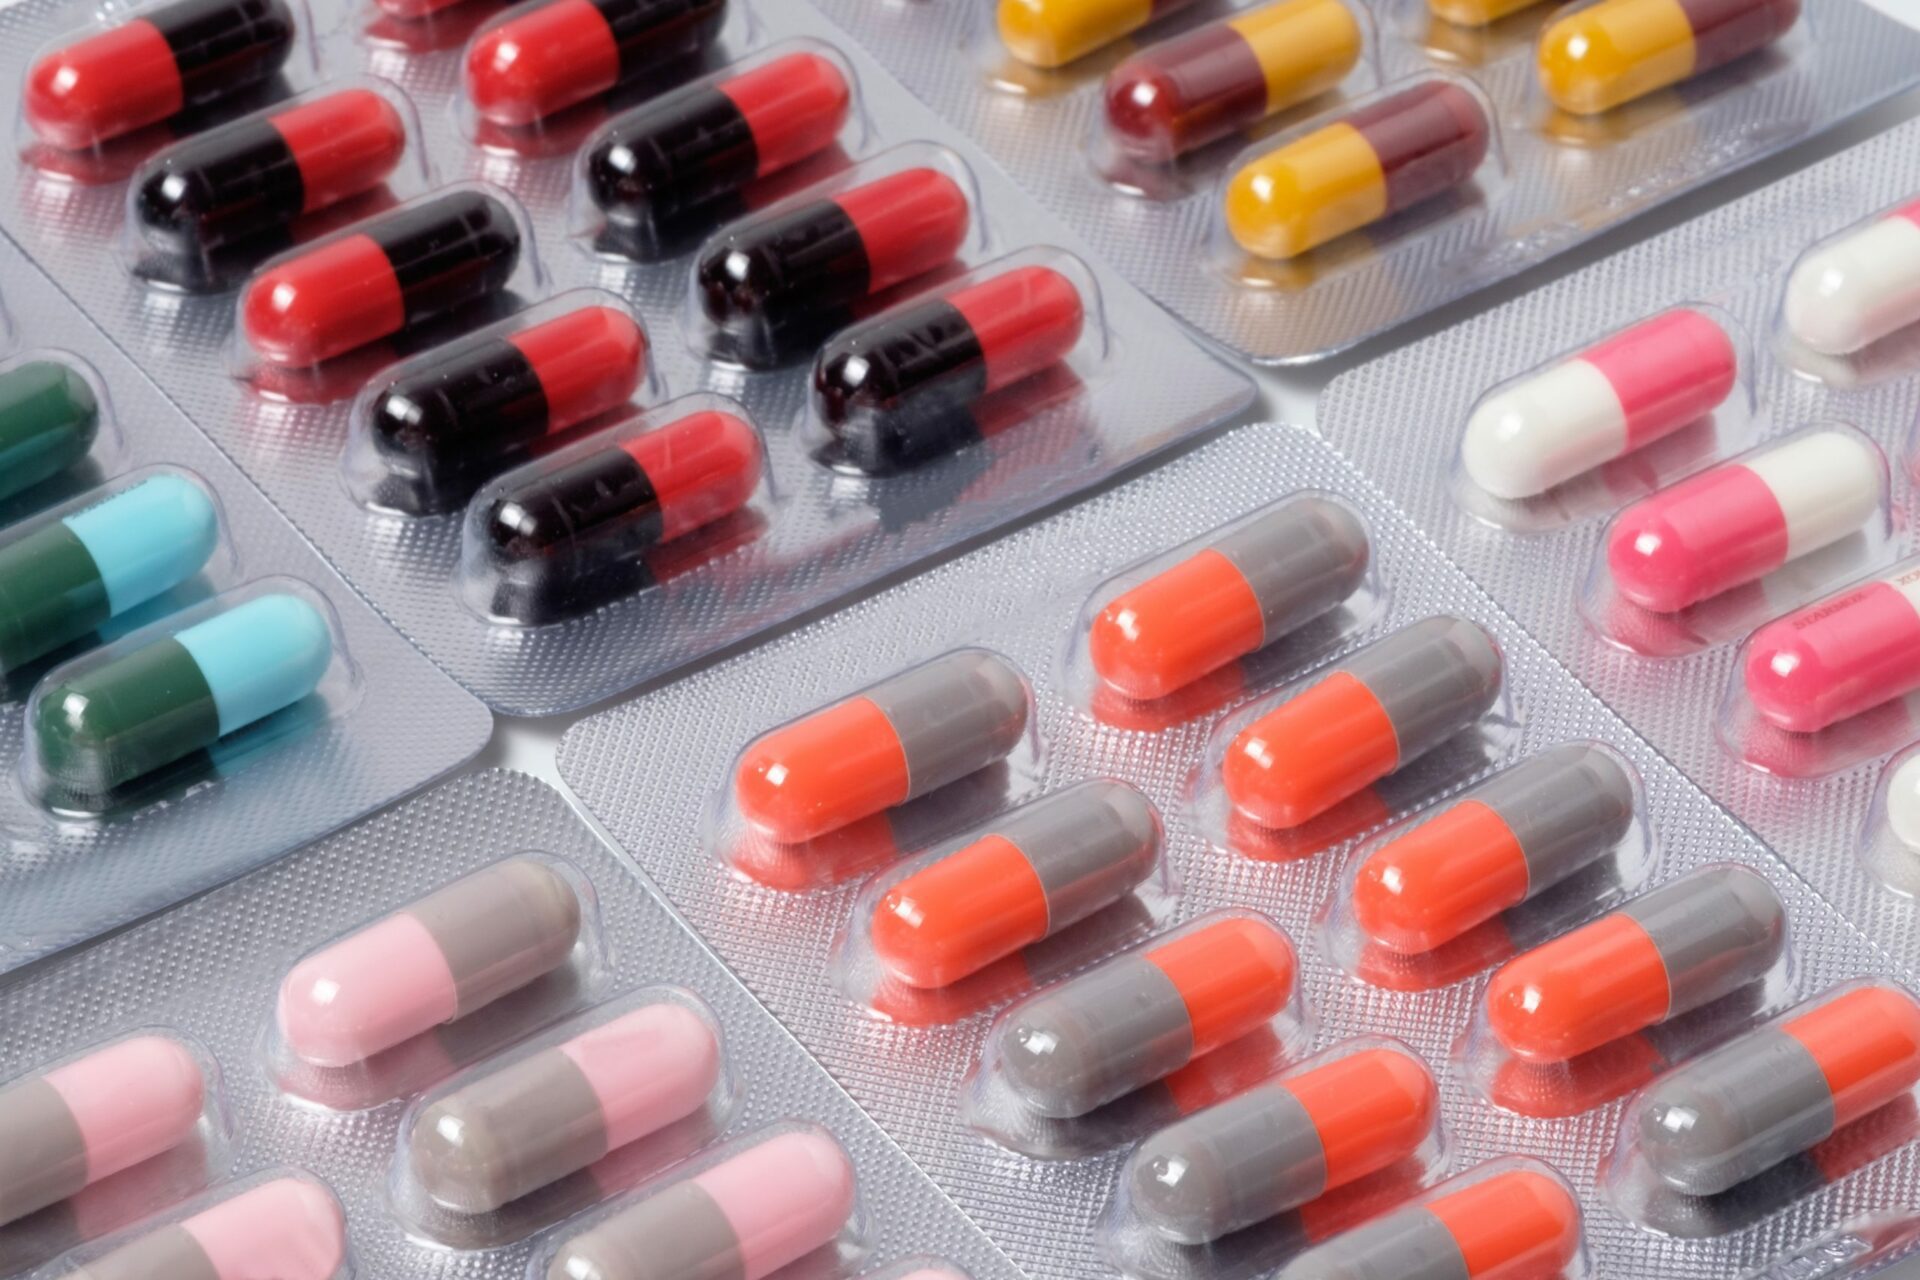 Tidak meminum antibiotik lengkap yang diresepkan oleh dokter Anda dapat menyebabkan peningkatan resistensi antibiotik.